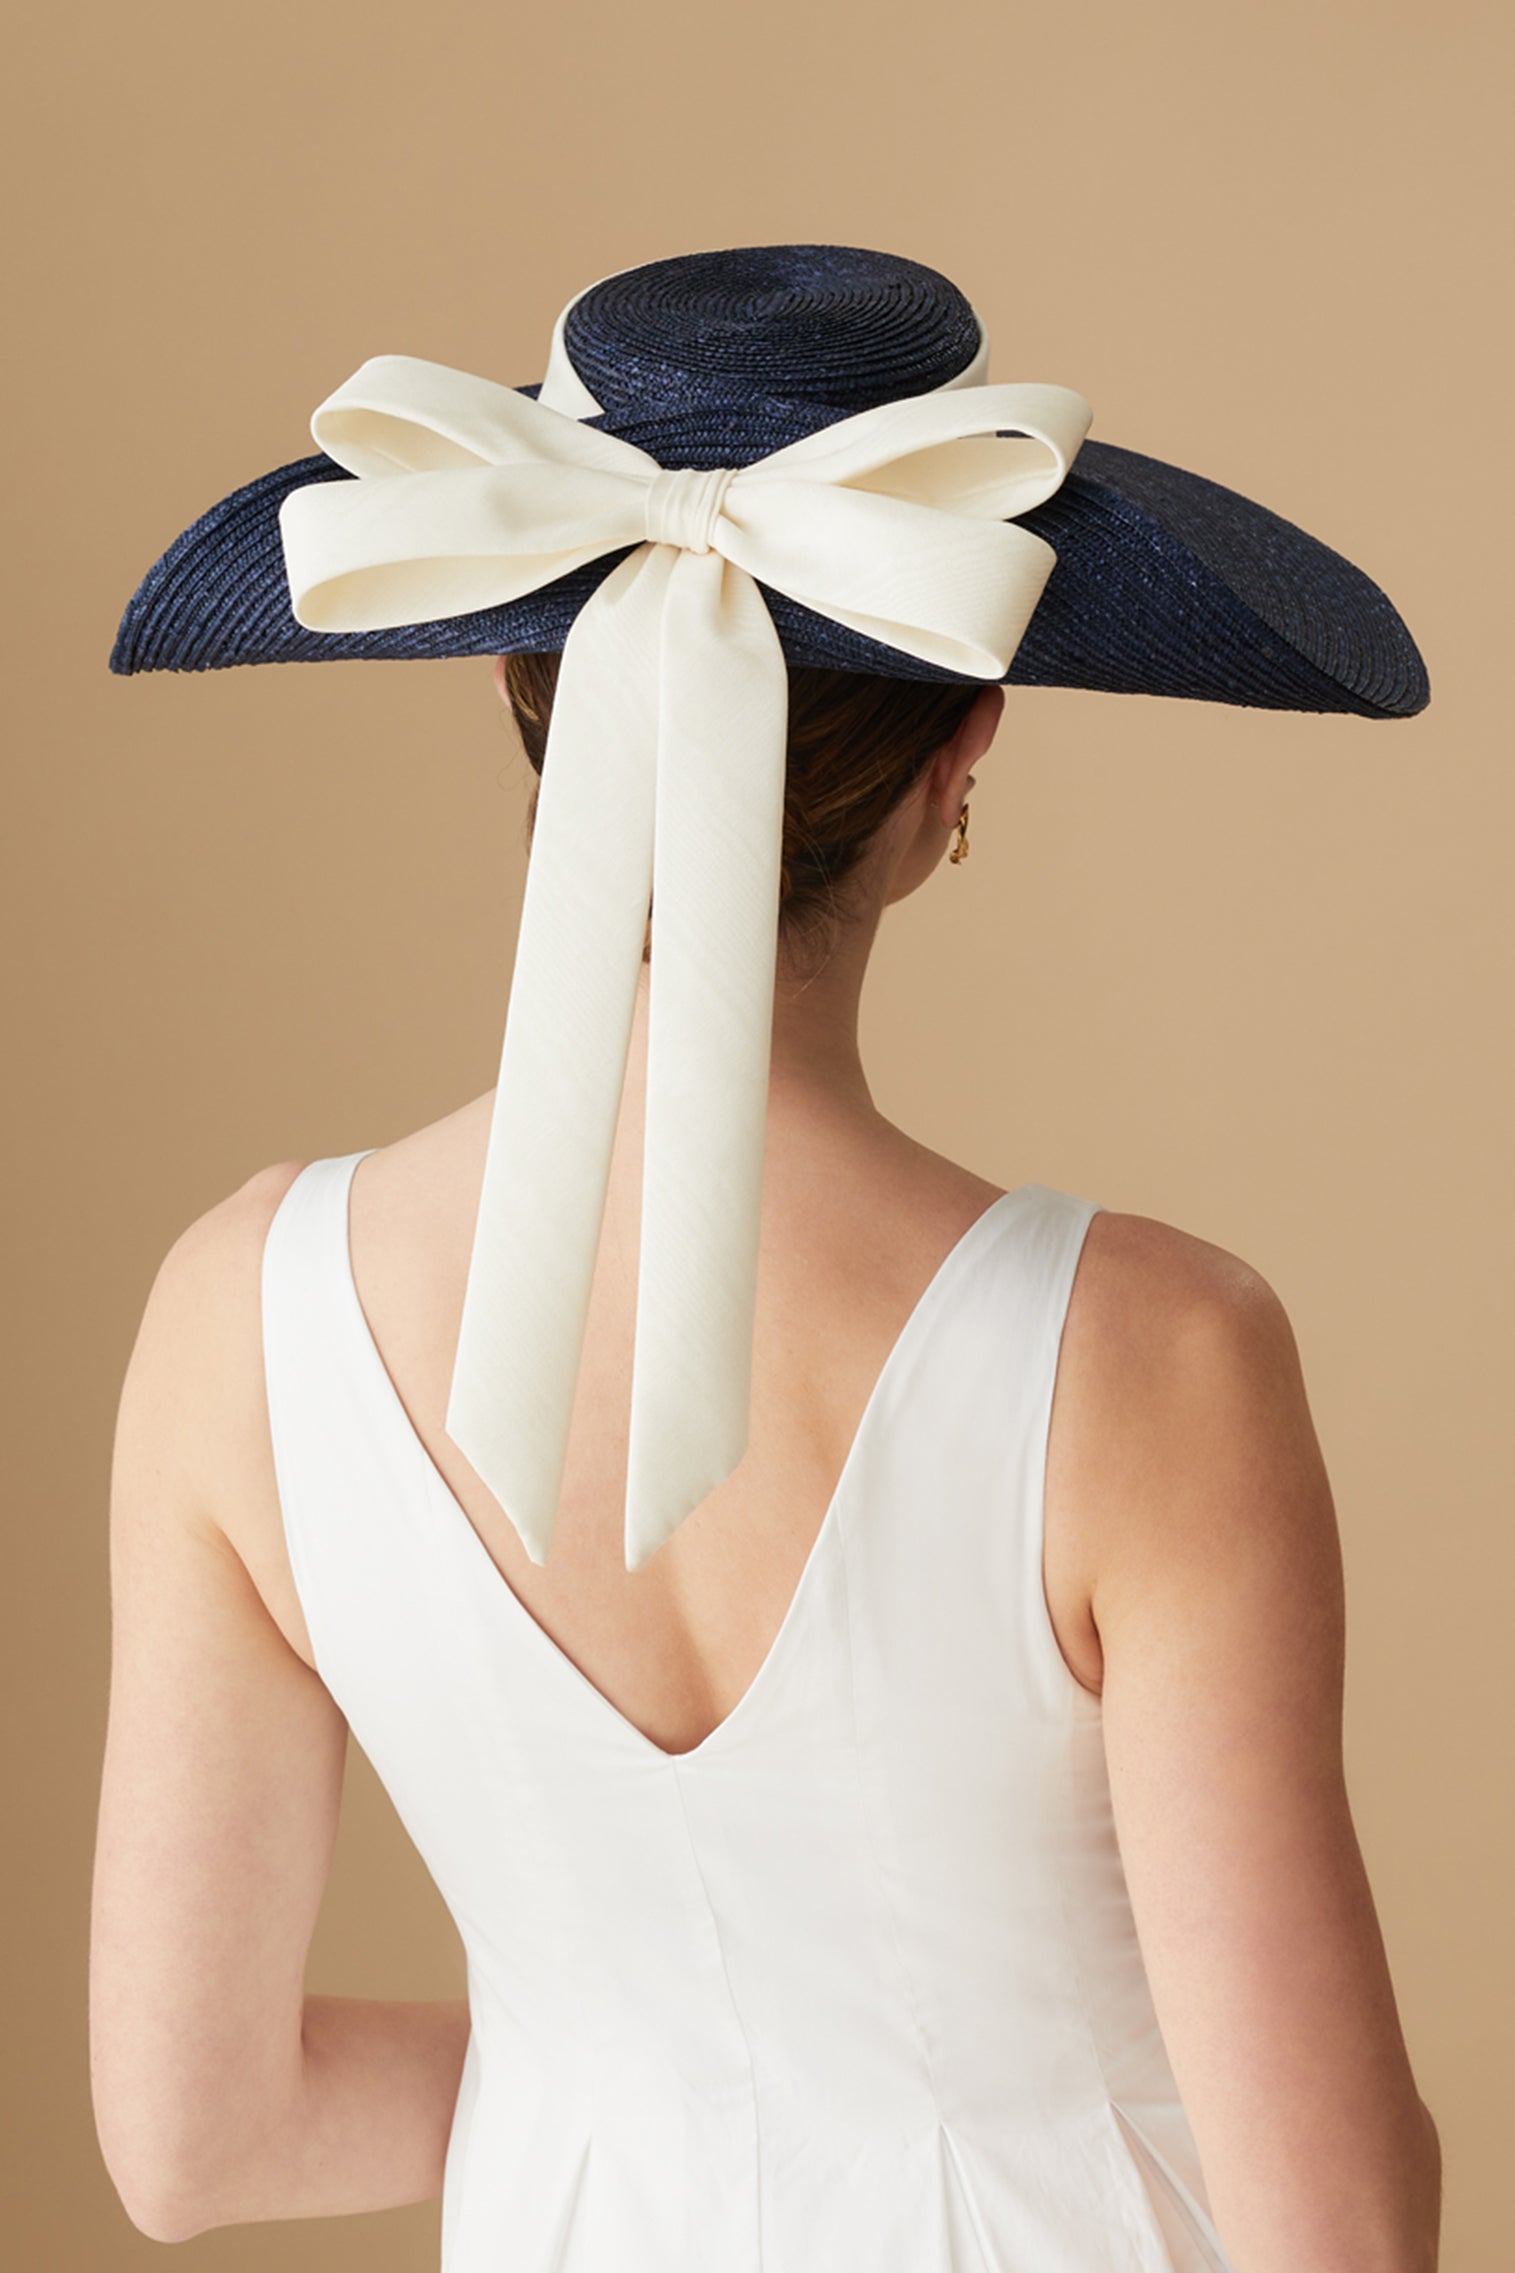 Lady Grey Navy Wide Brim Hat - Panamas & Sun Hats for Women - Lock & Co. Hatters London UK